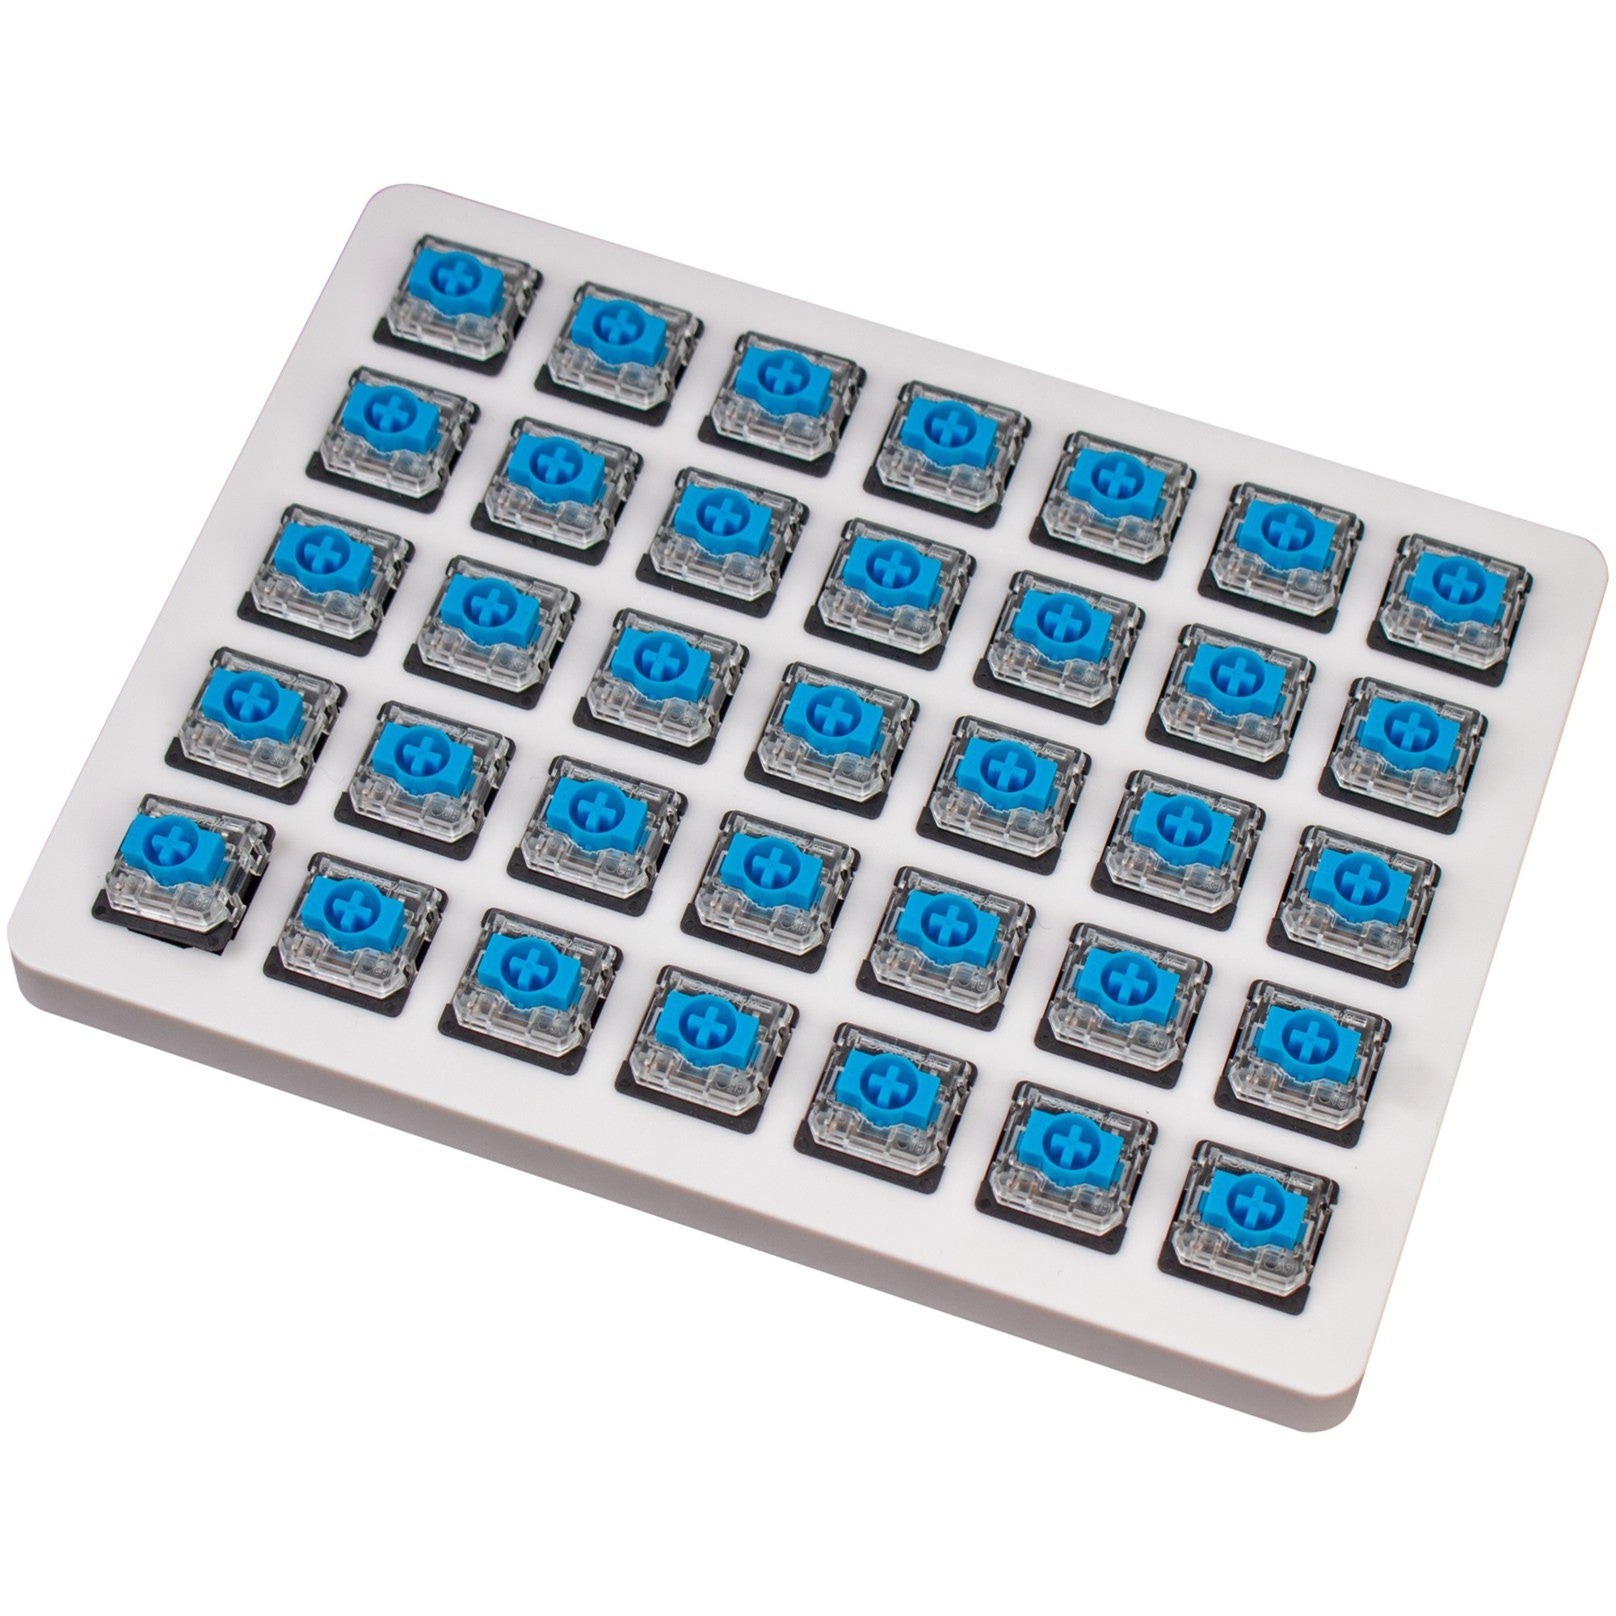 Image of Alternate - Gateron Low Profile Mechanical Blue Switch-Set, Tastenschalter online einkaufen bei Alternate